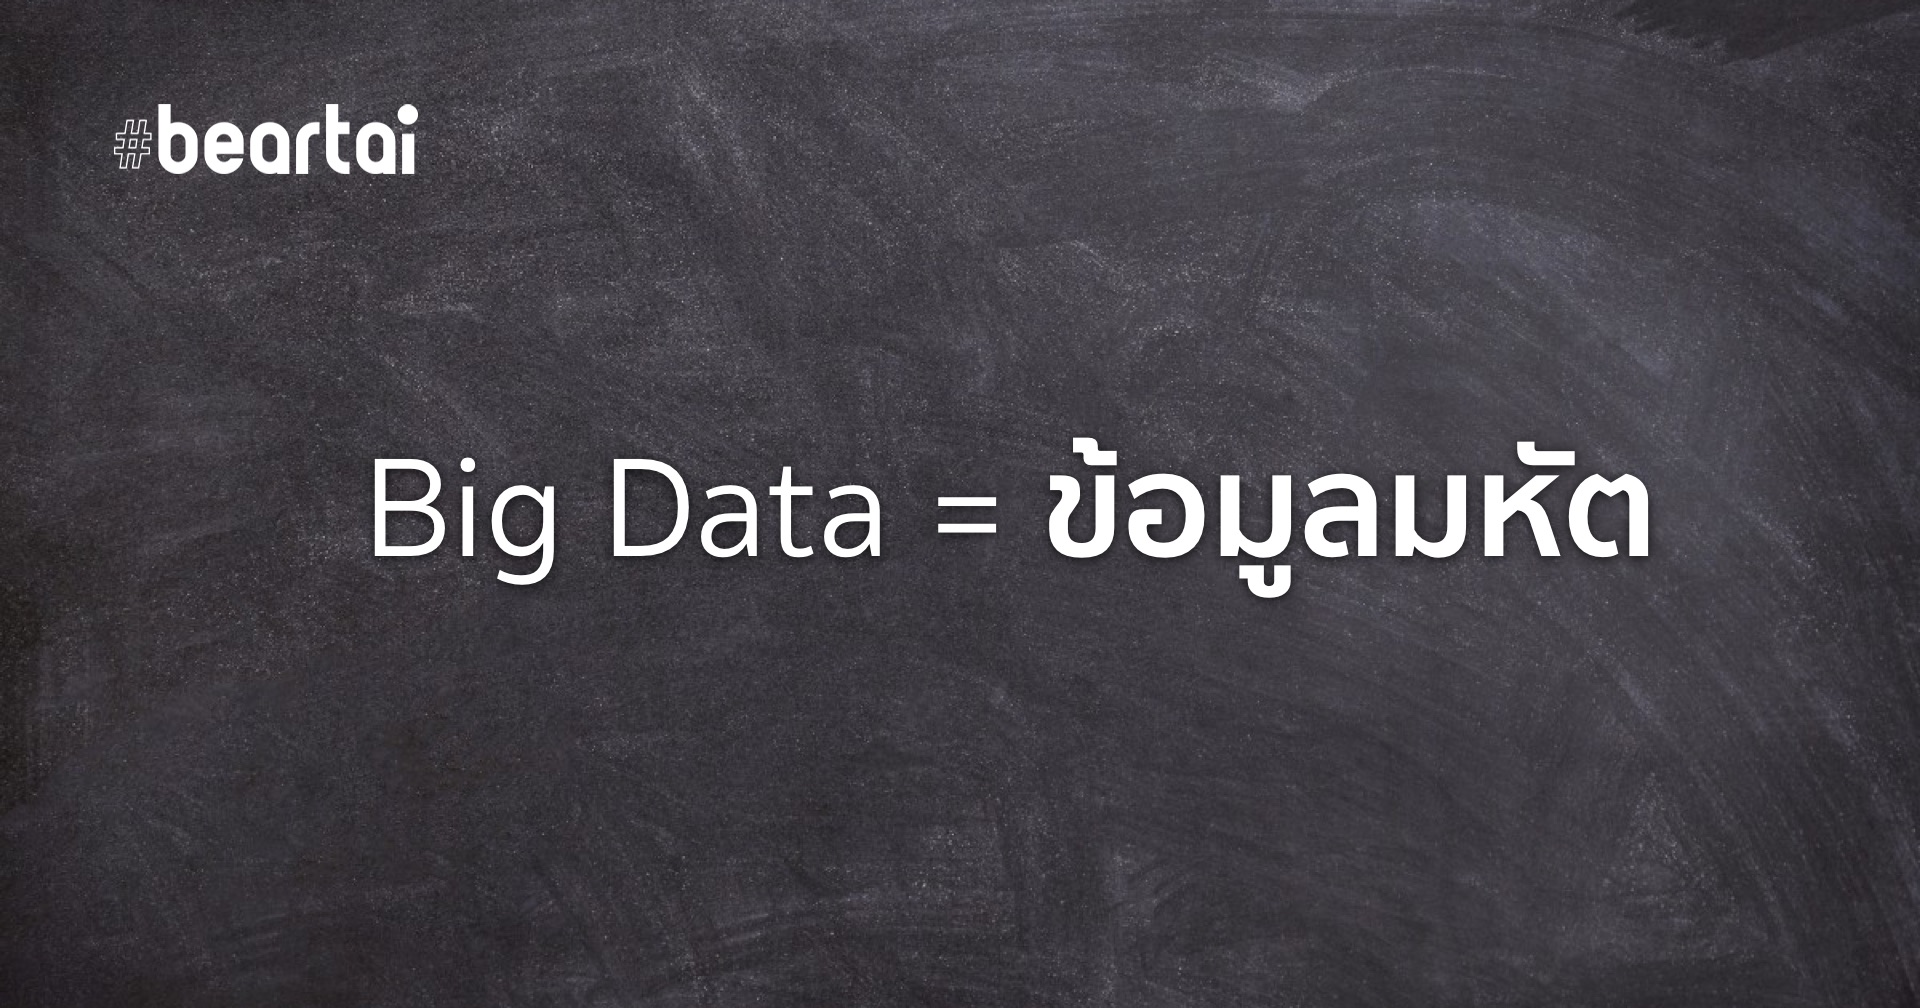 ราชบัณฑิตฯ บัญญัติ ‘Big Data’ เป็นภาษาไทยว่า ‘ข้อมูลมหัต’ และ Machine Learning ว่า ‘การเรียนรู้ของเครื่อง’